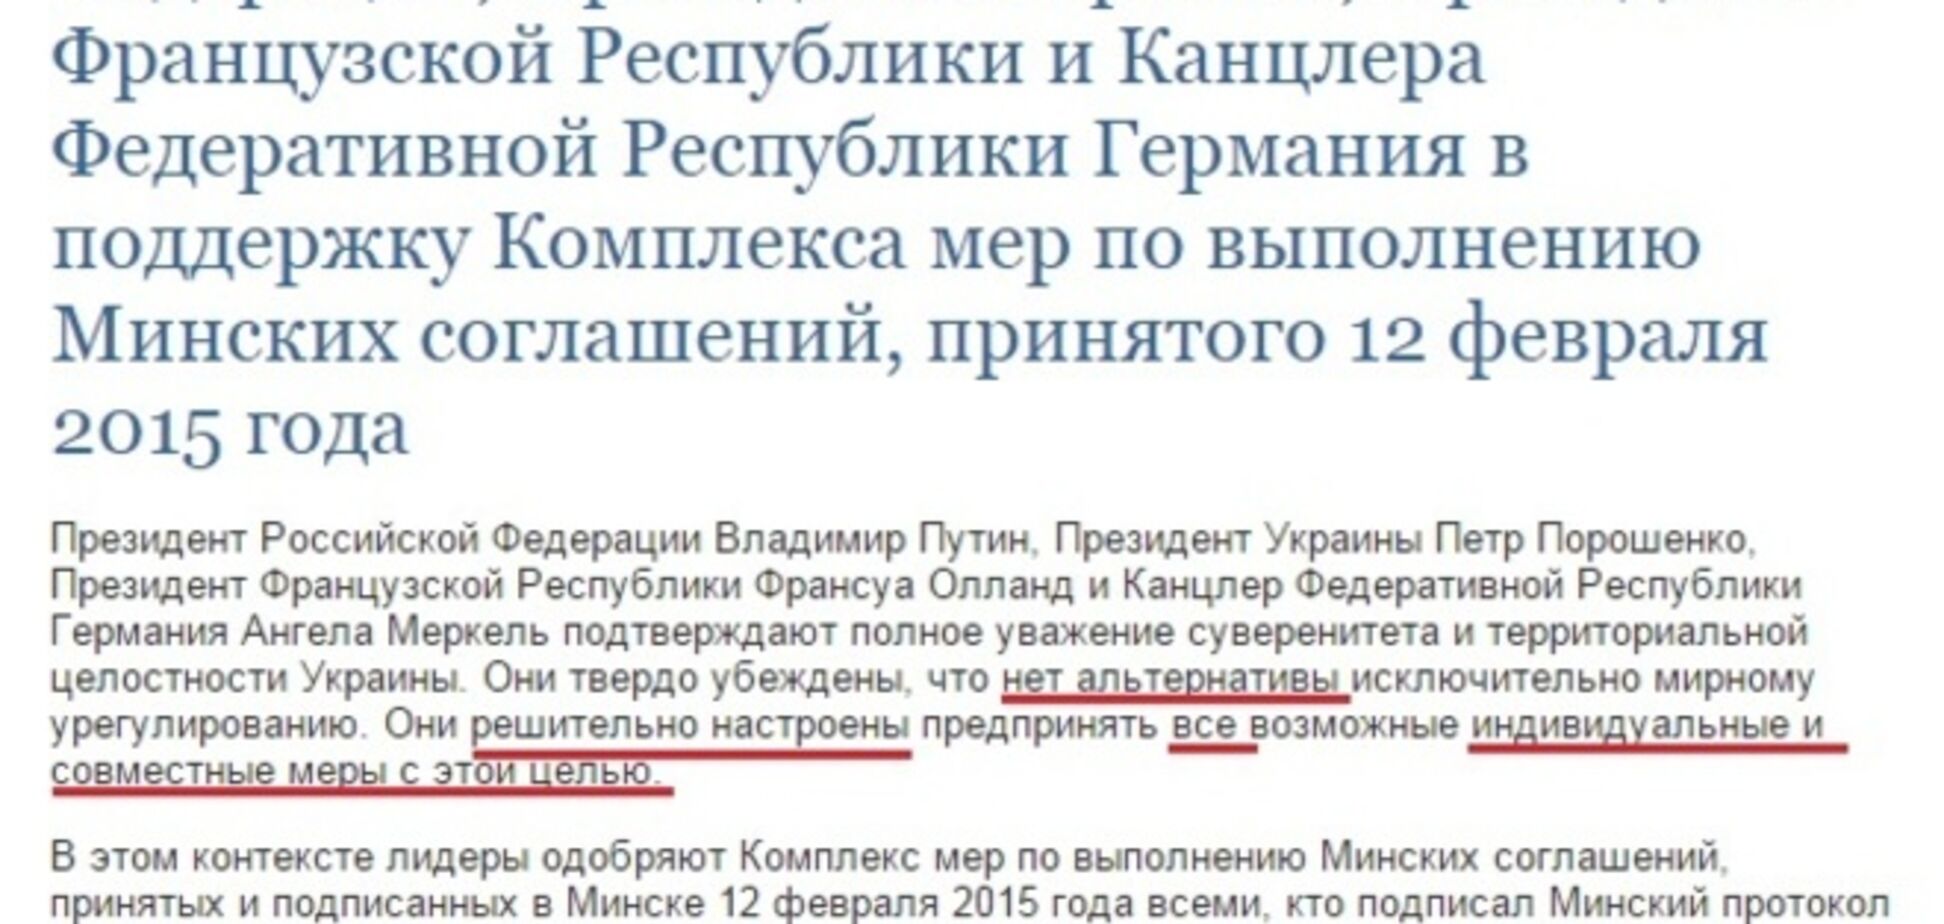 Журналисты нашли 10 несовпадений в текстах минской декларации на сайтах Путина и Порошенко